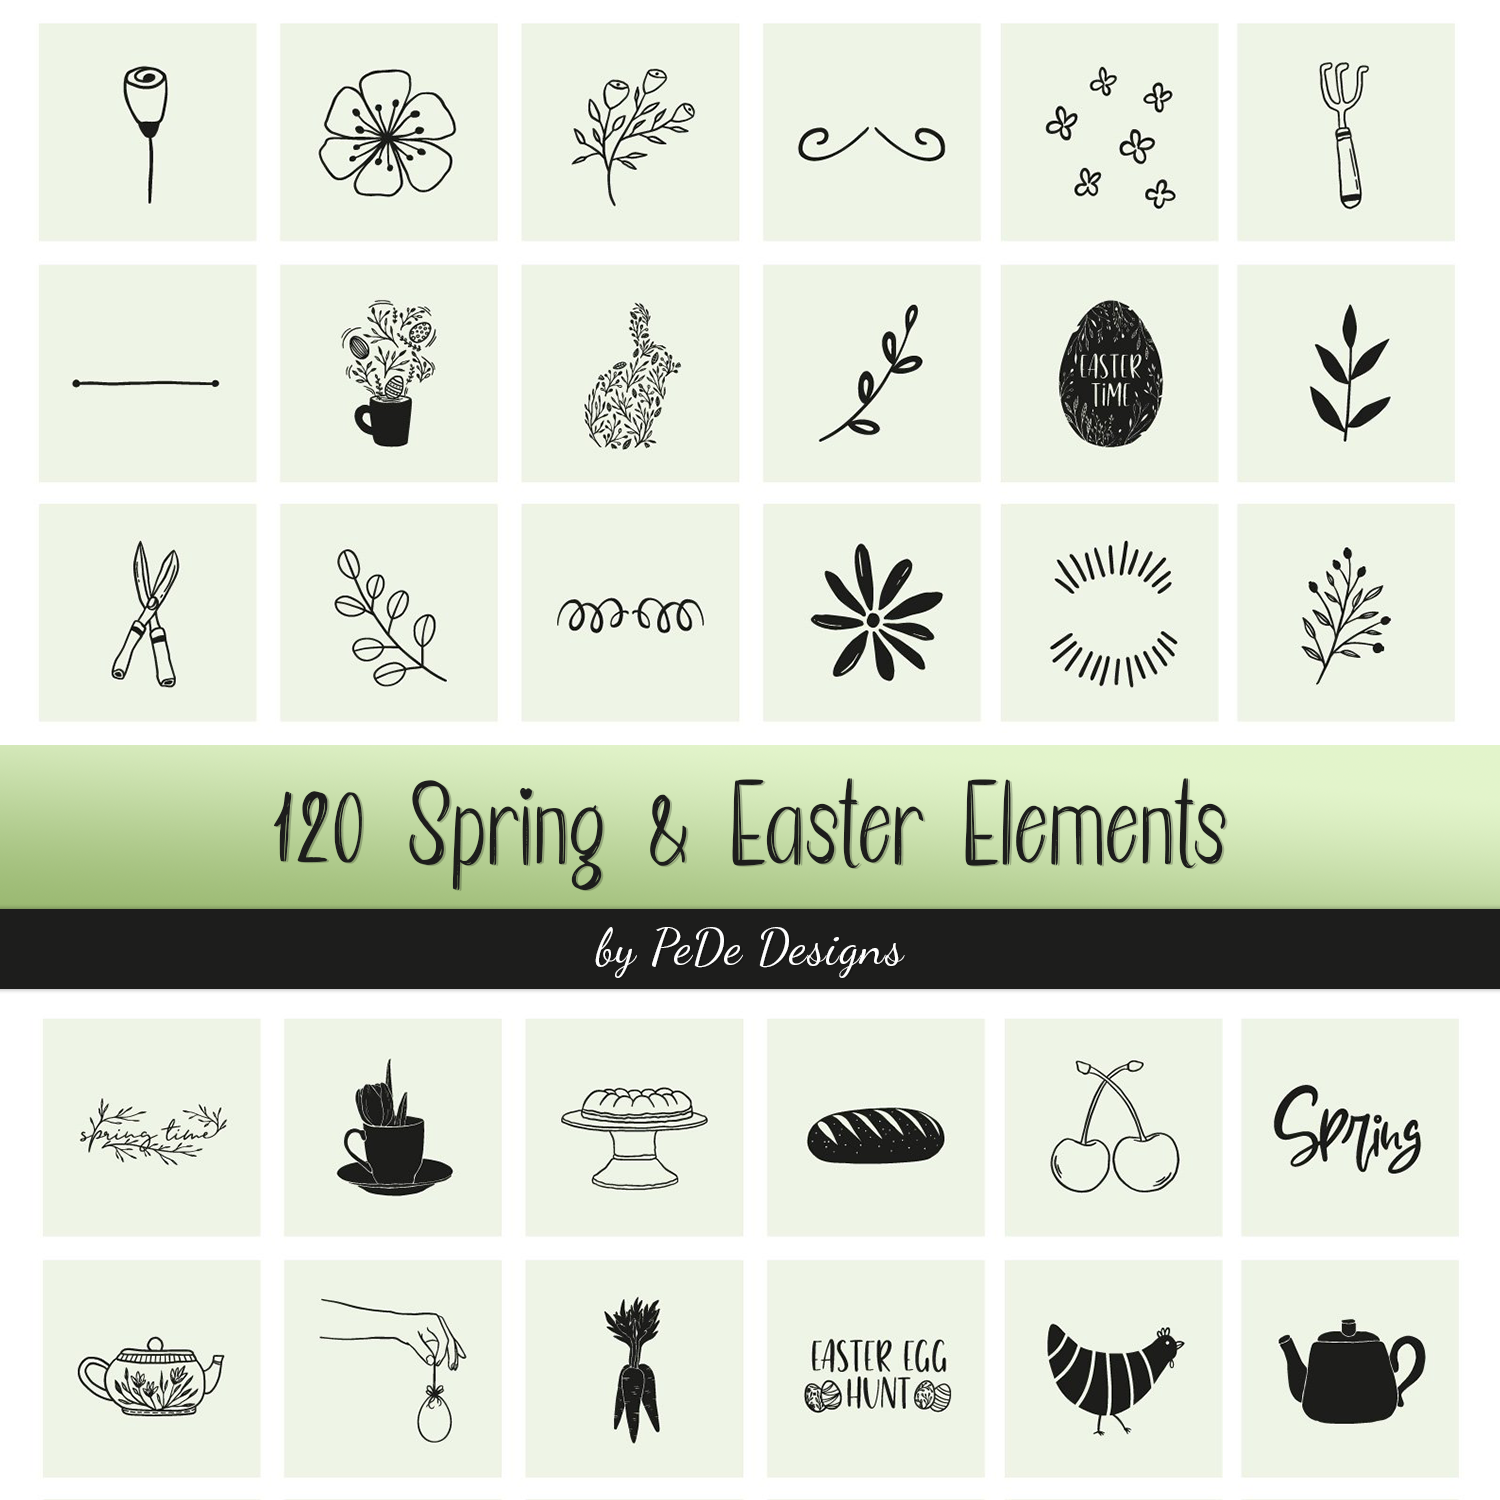 120 Spring & Easter Elements.